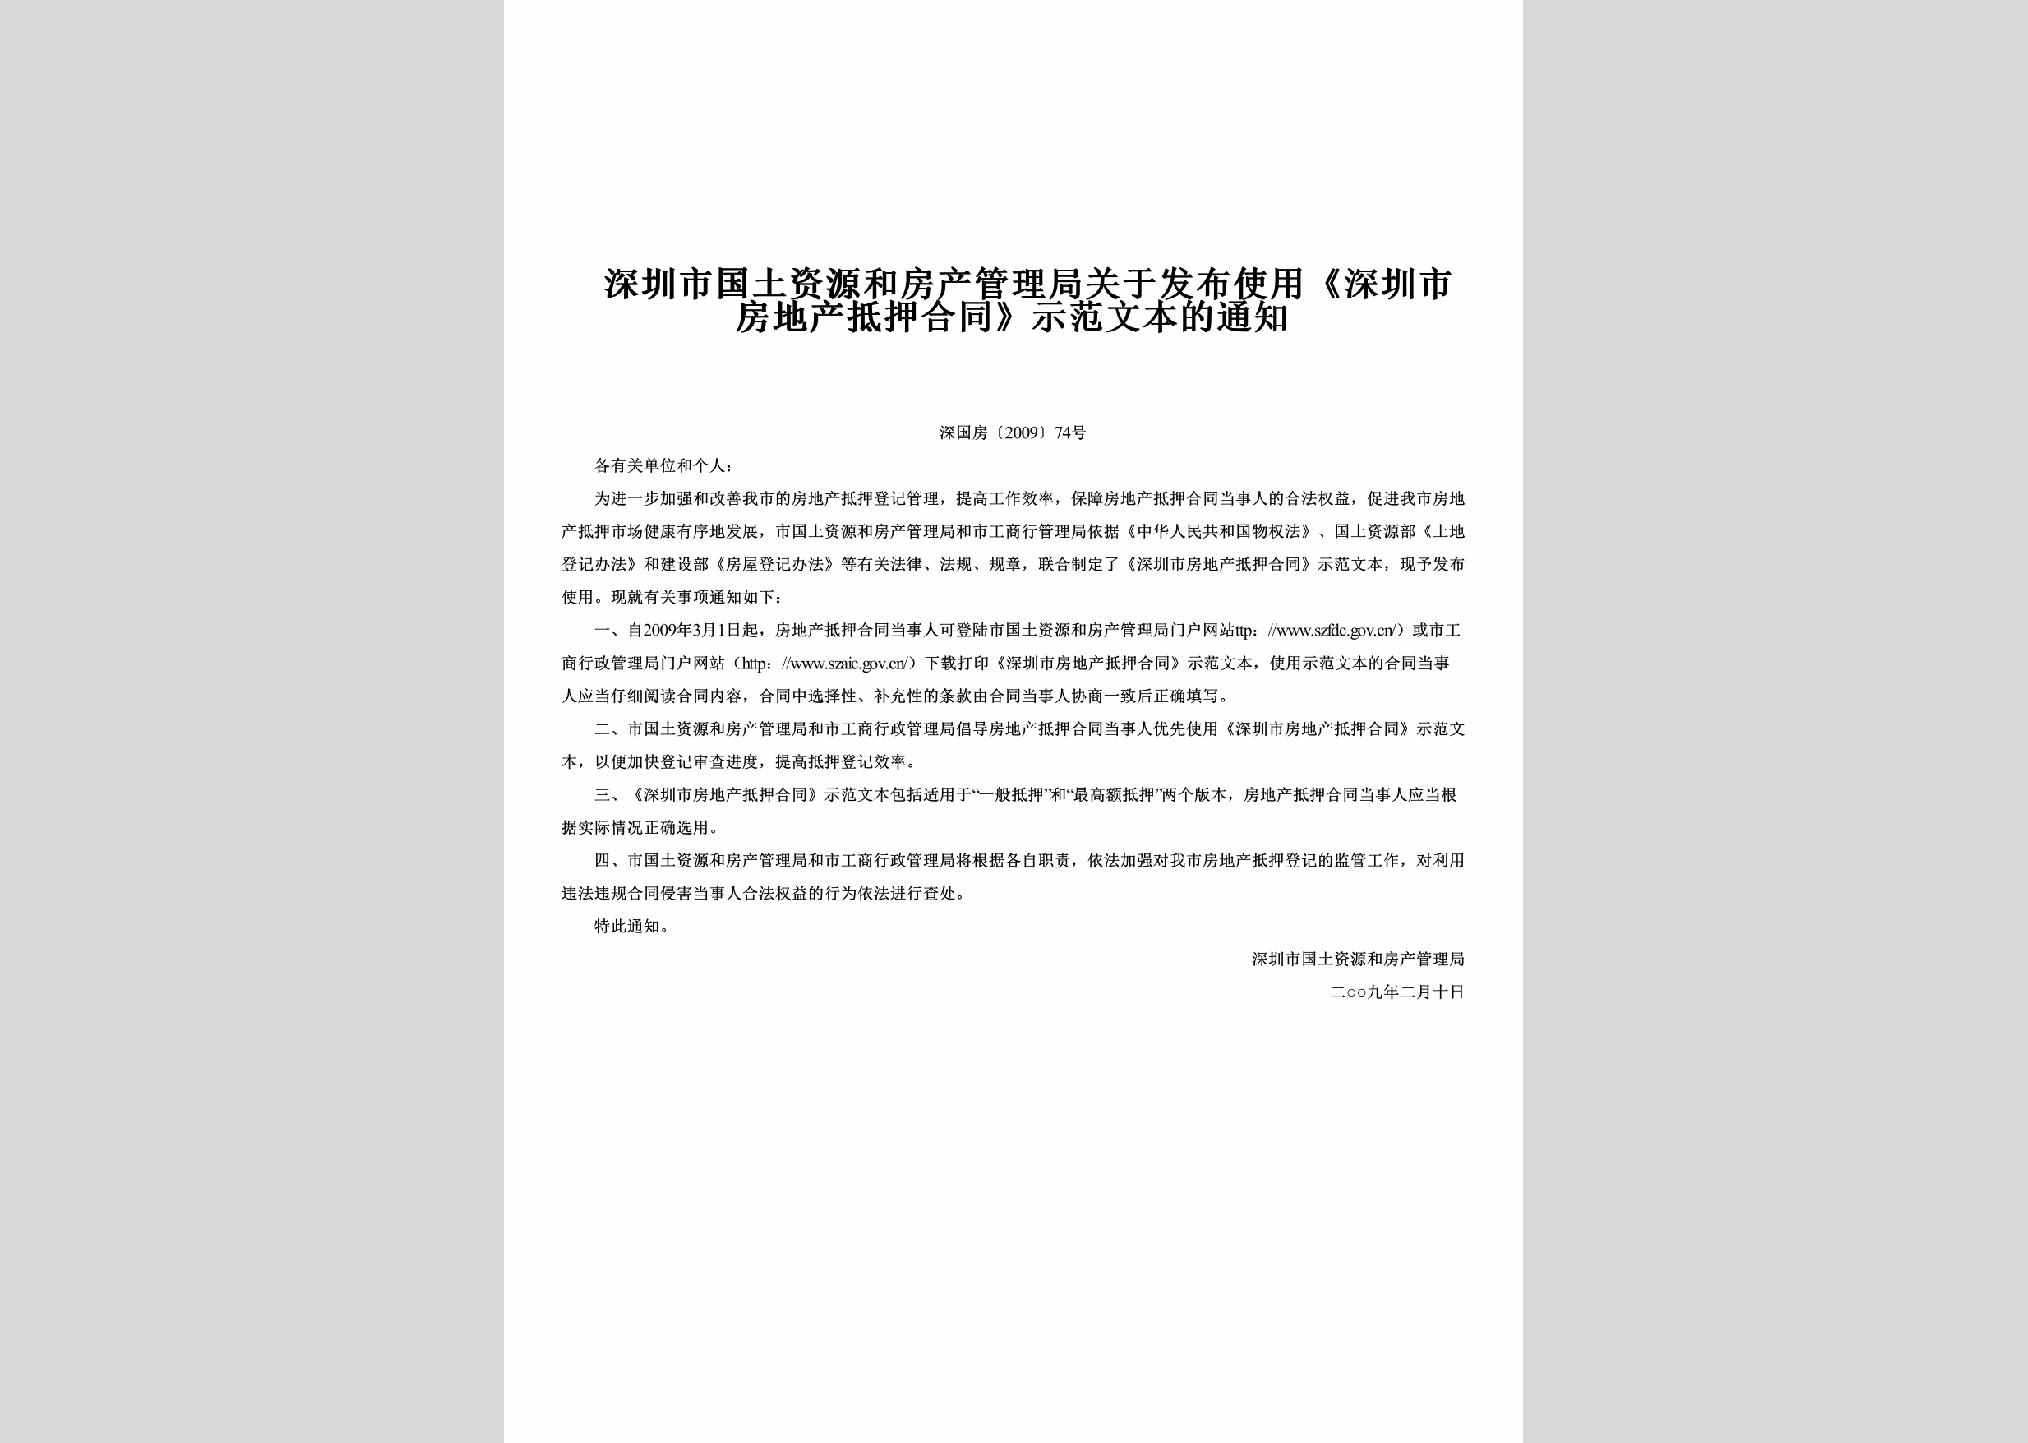 深国房[2009]74号：关于发布使用《深圳市房地产抵押合同》示范文本的通知